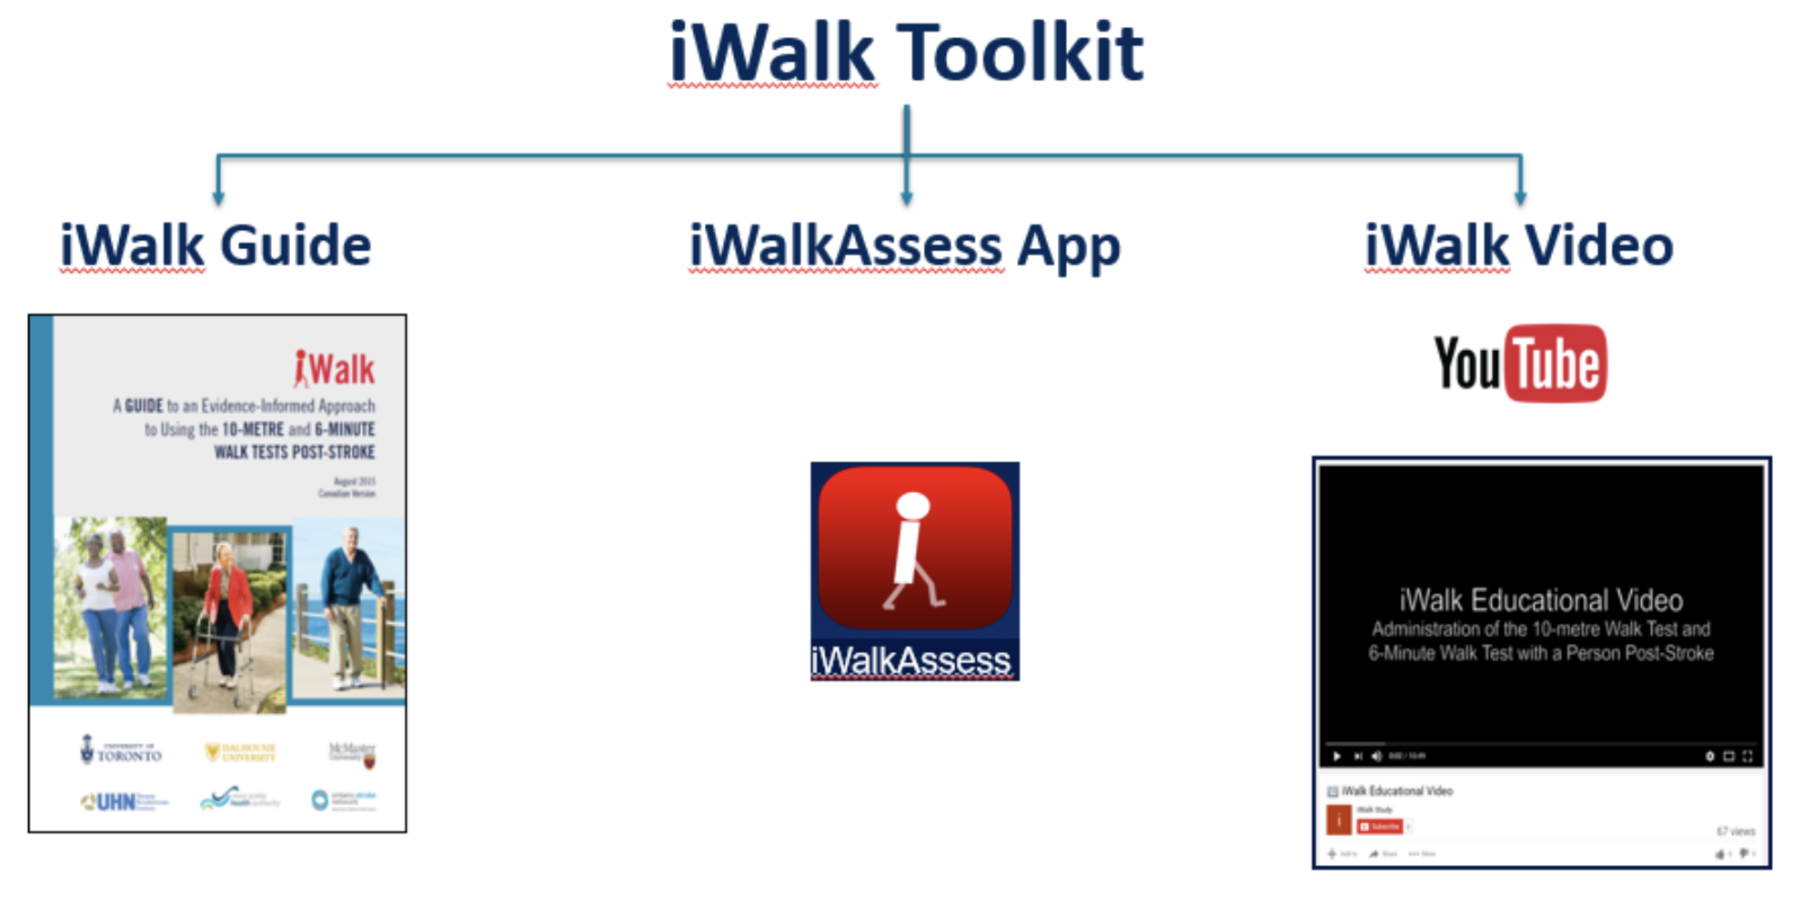 iWalk Toolkit Schematic